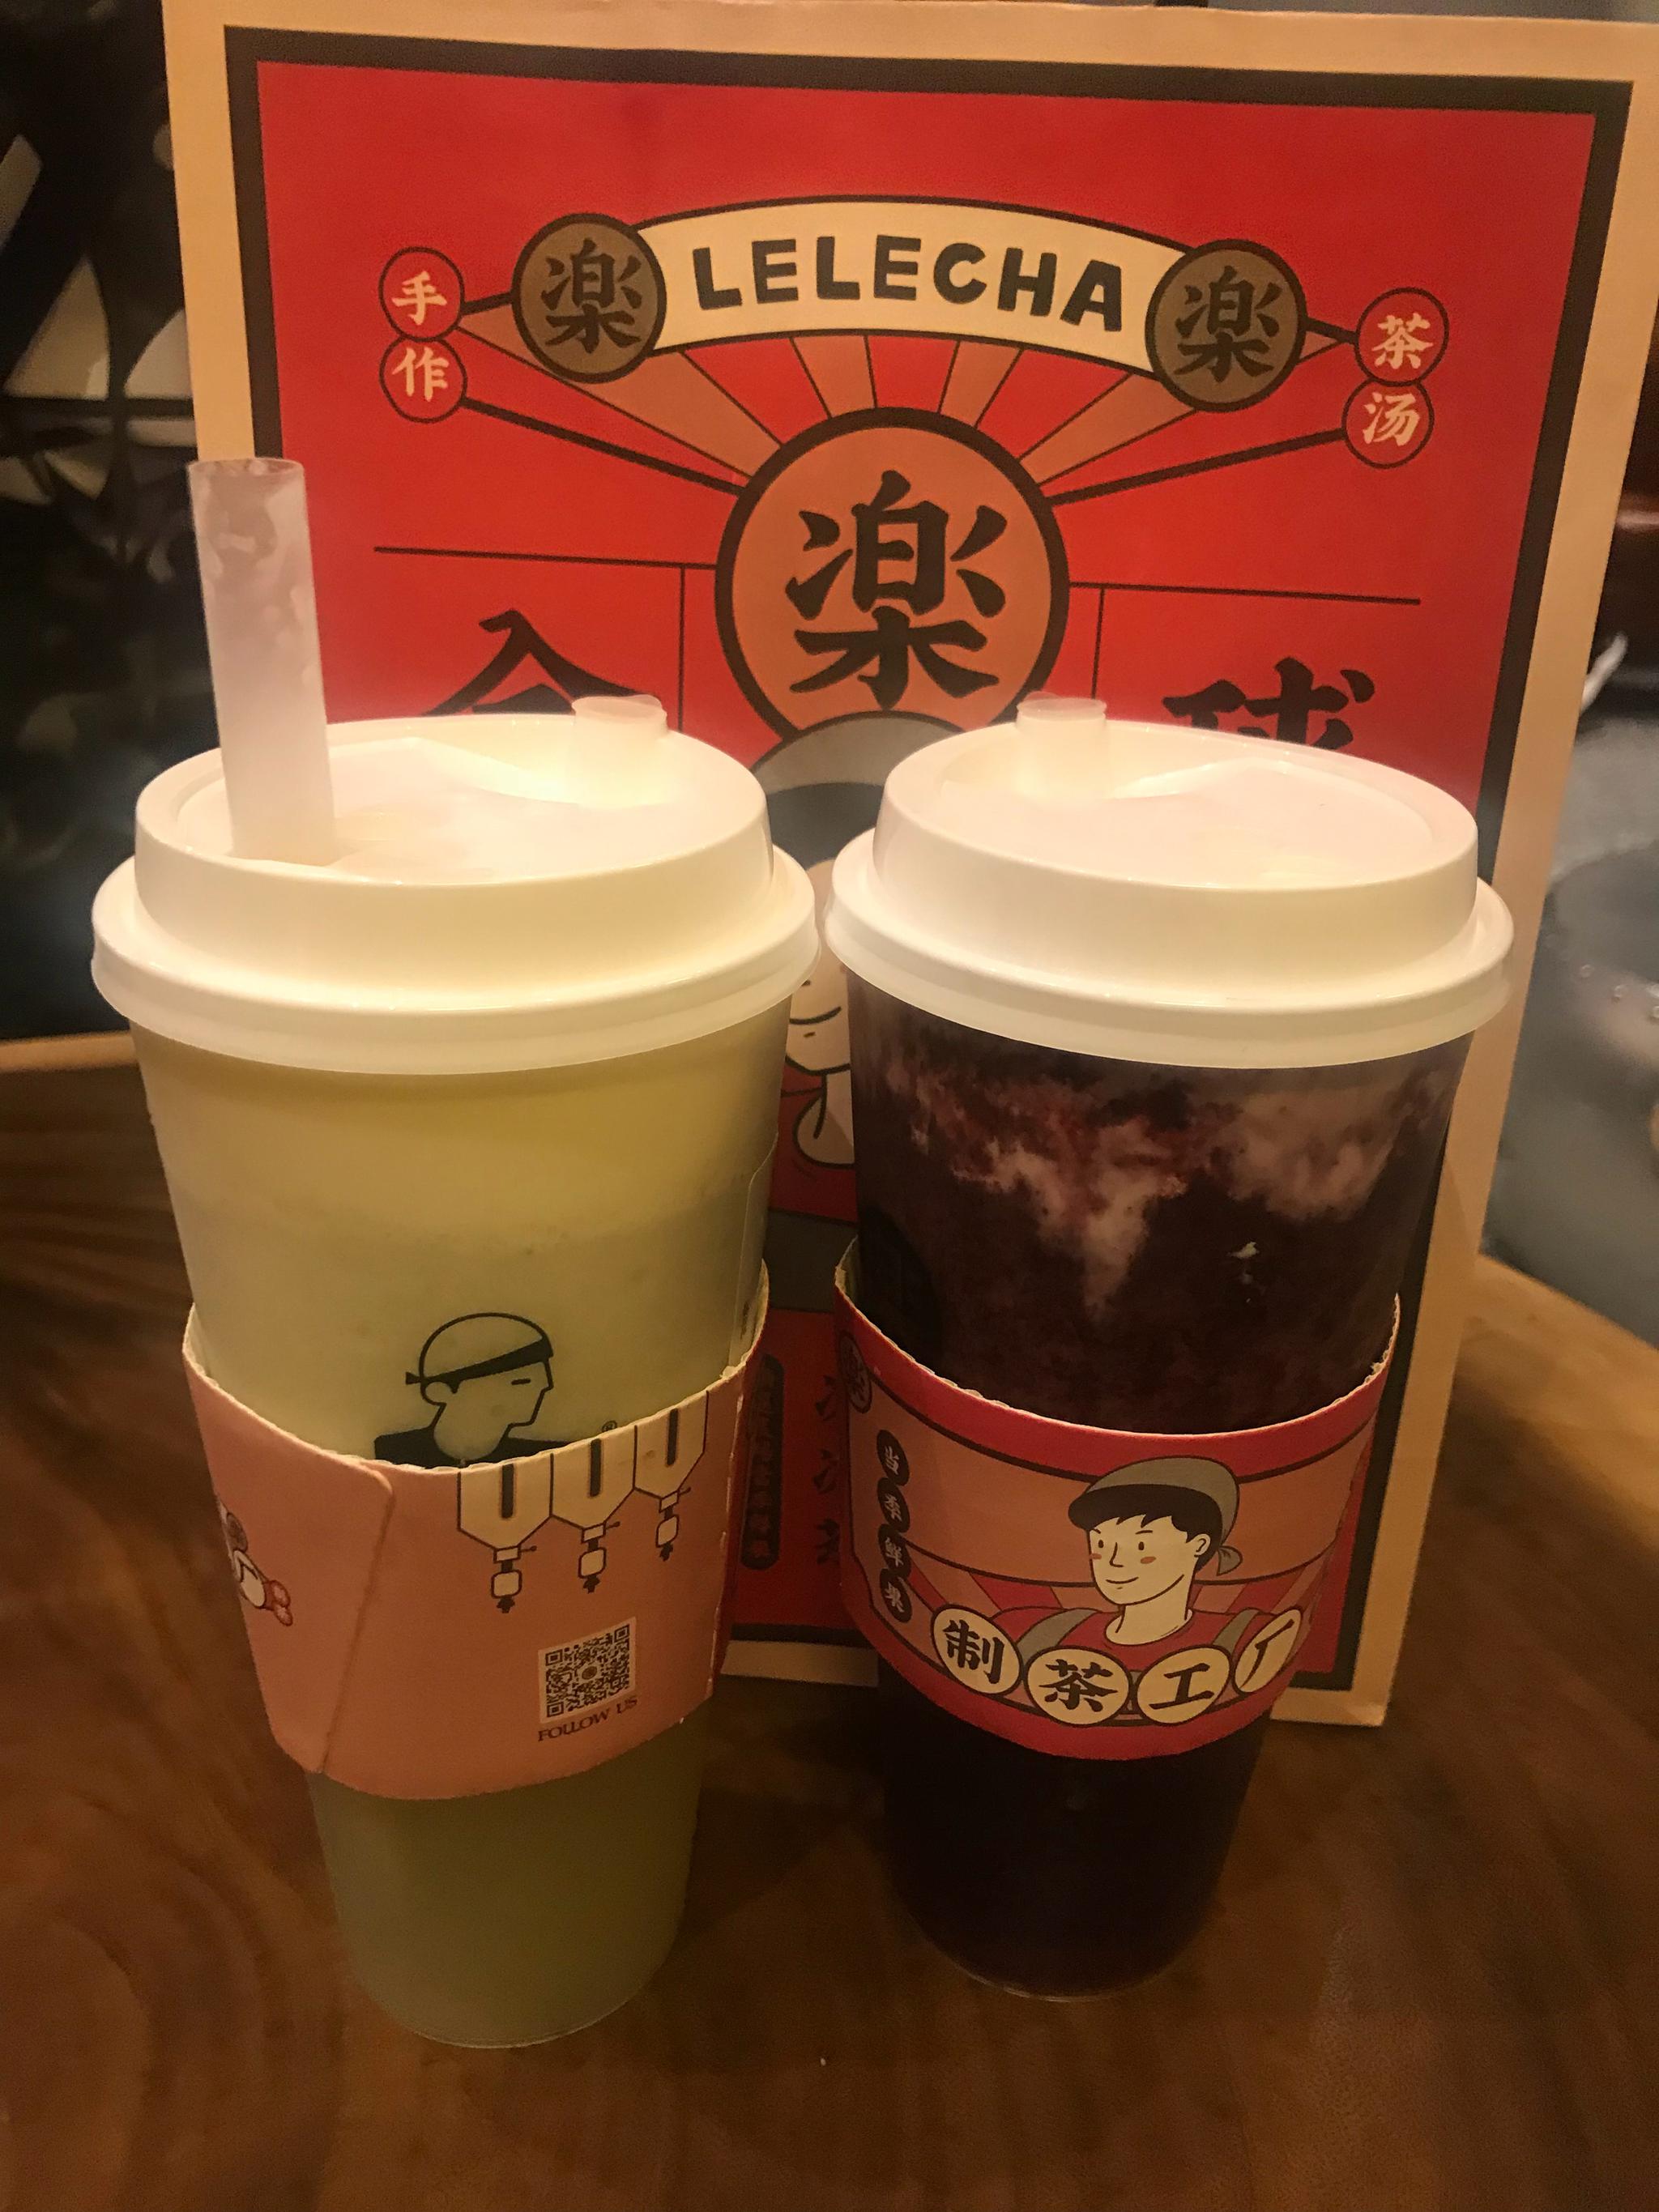 乐乐茶推出海丝博物馆联名款奶茶 | Foodaily每日食品